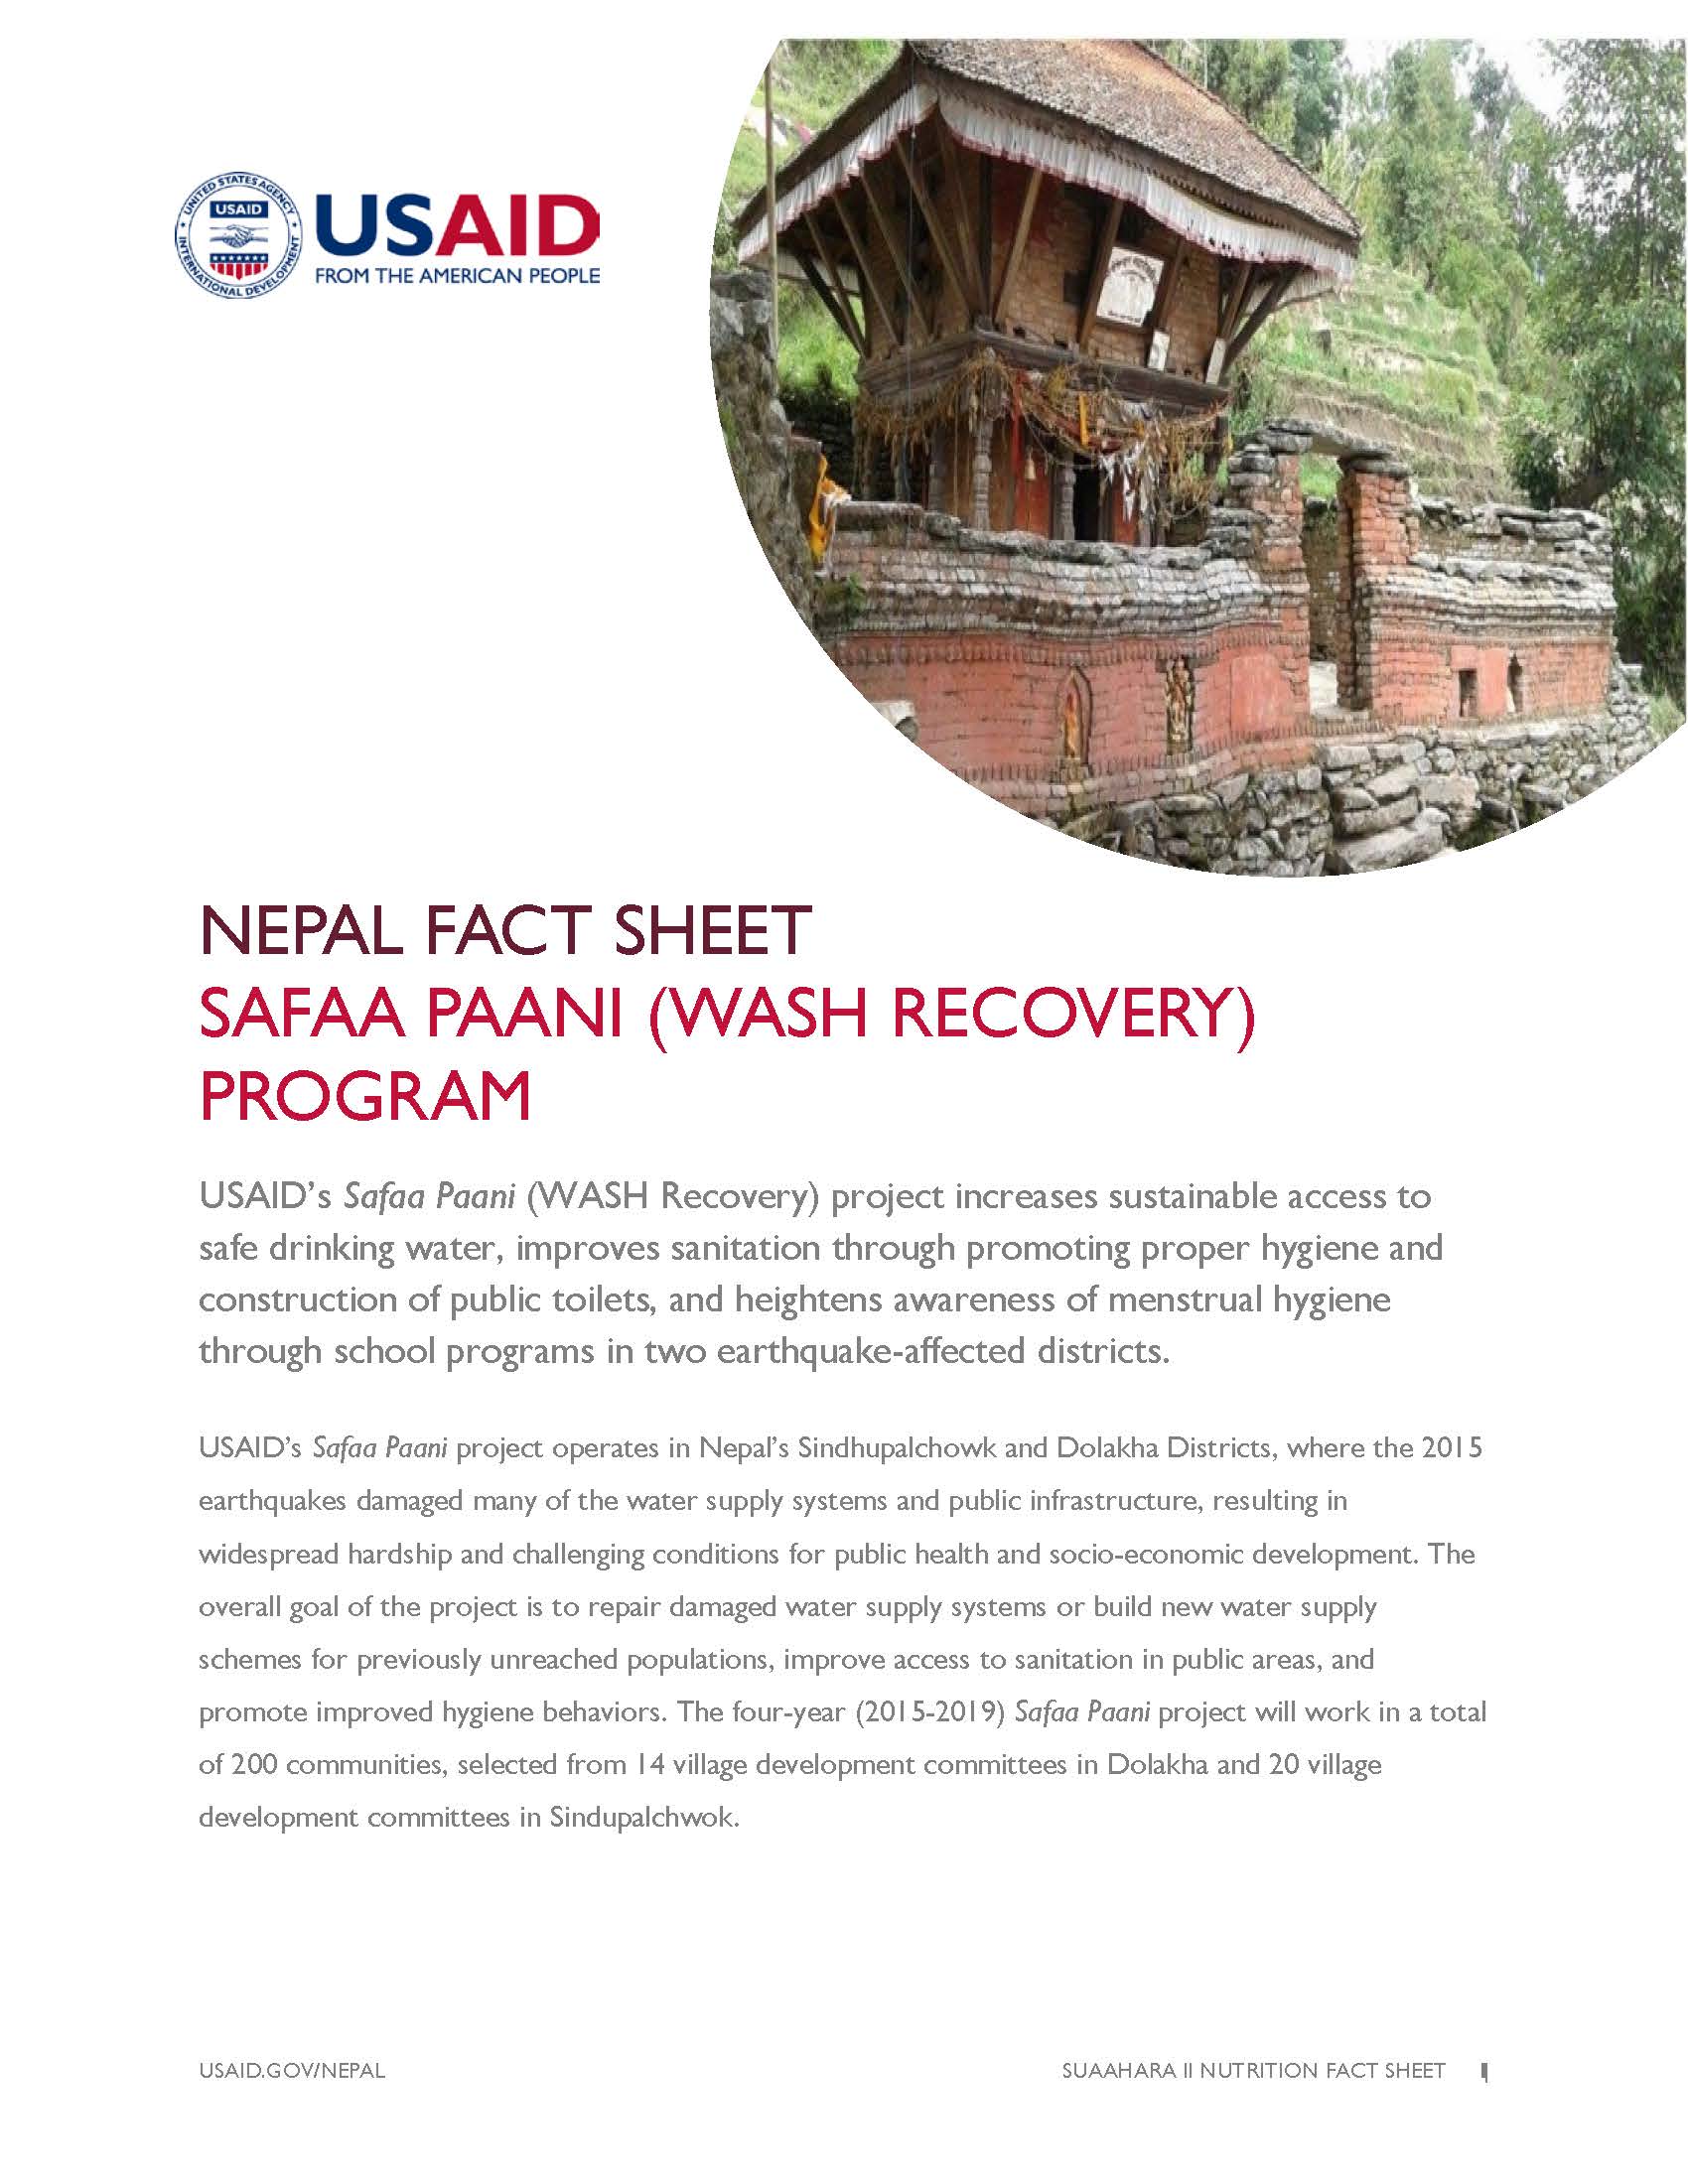 Fact Sheet: SAFAA PAANI (WASH RECOVERY) PROGRAM